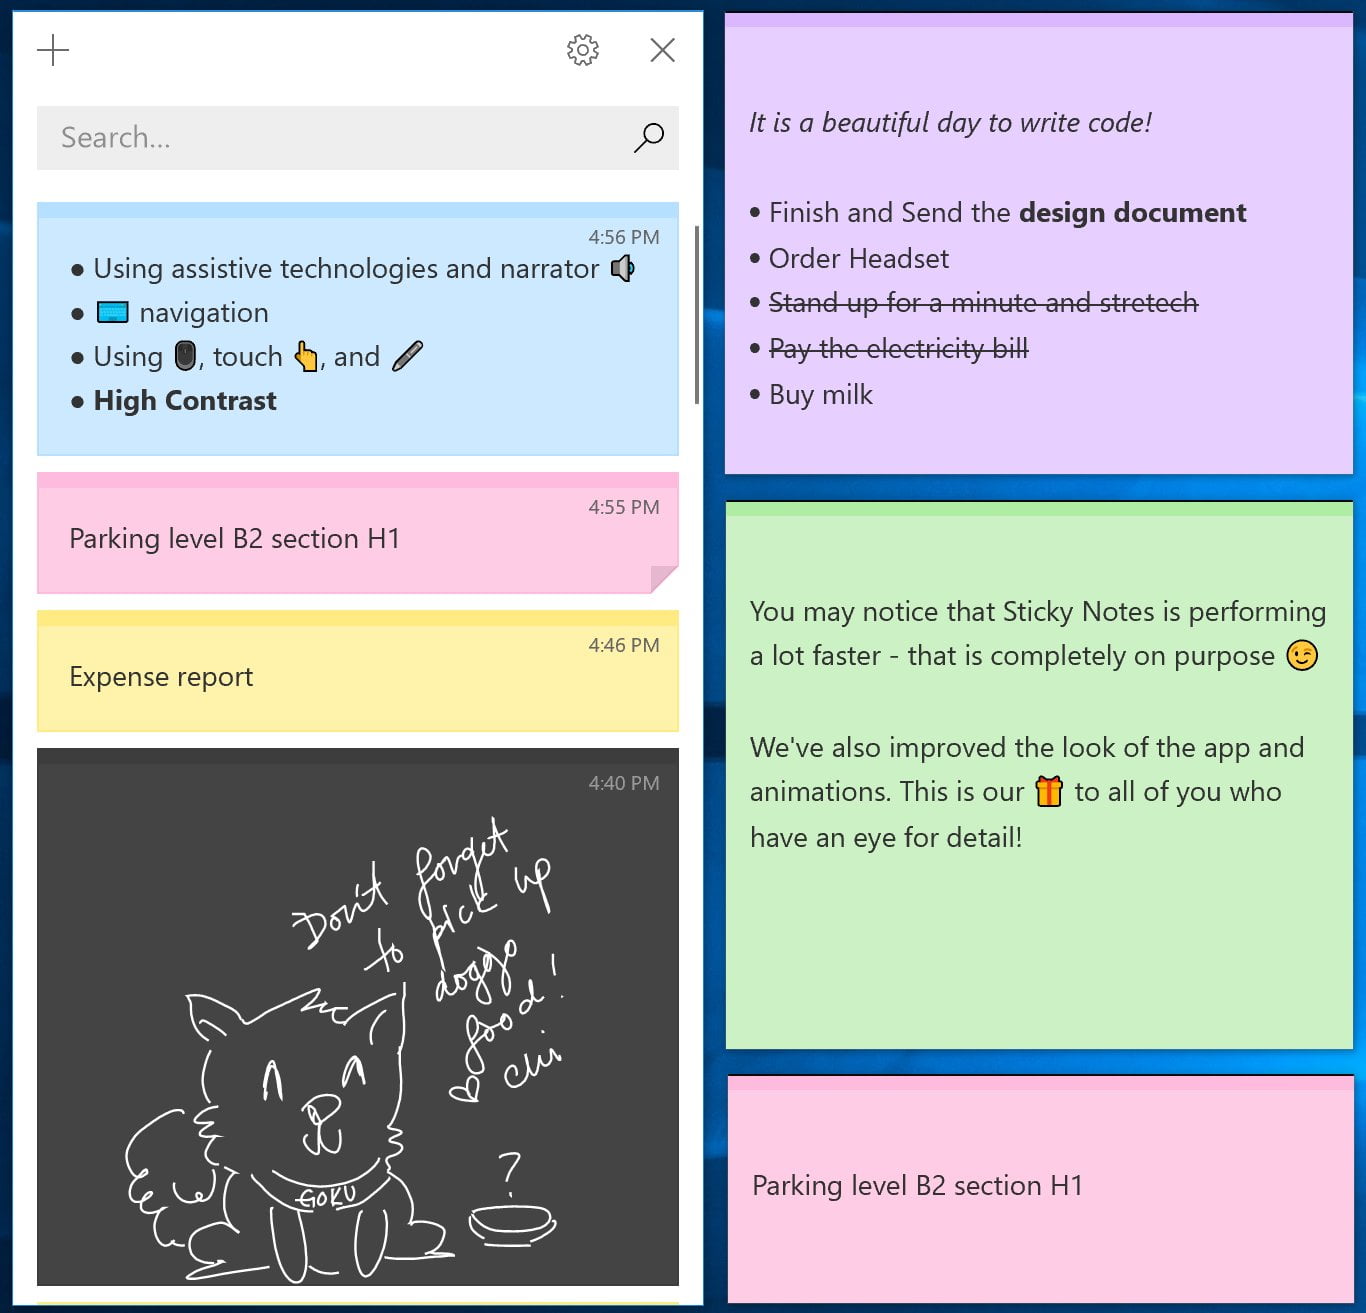 Sticky Notes 3.0 tendrá Home y barra de búsqueda